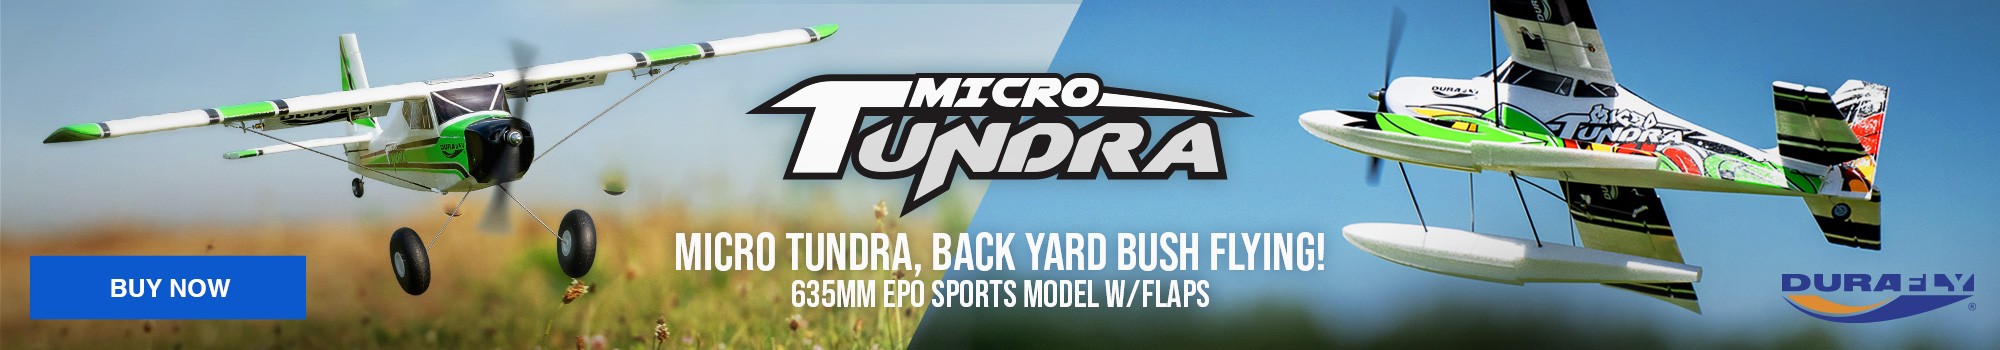 Micro Tundra, Back Yard Bush Flying!